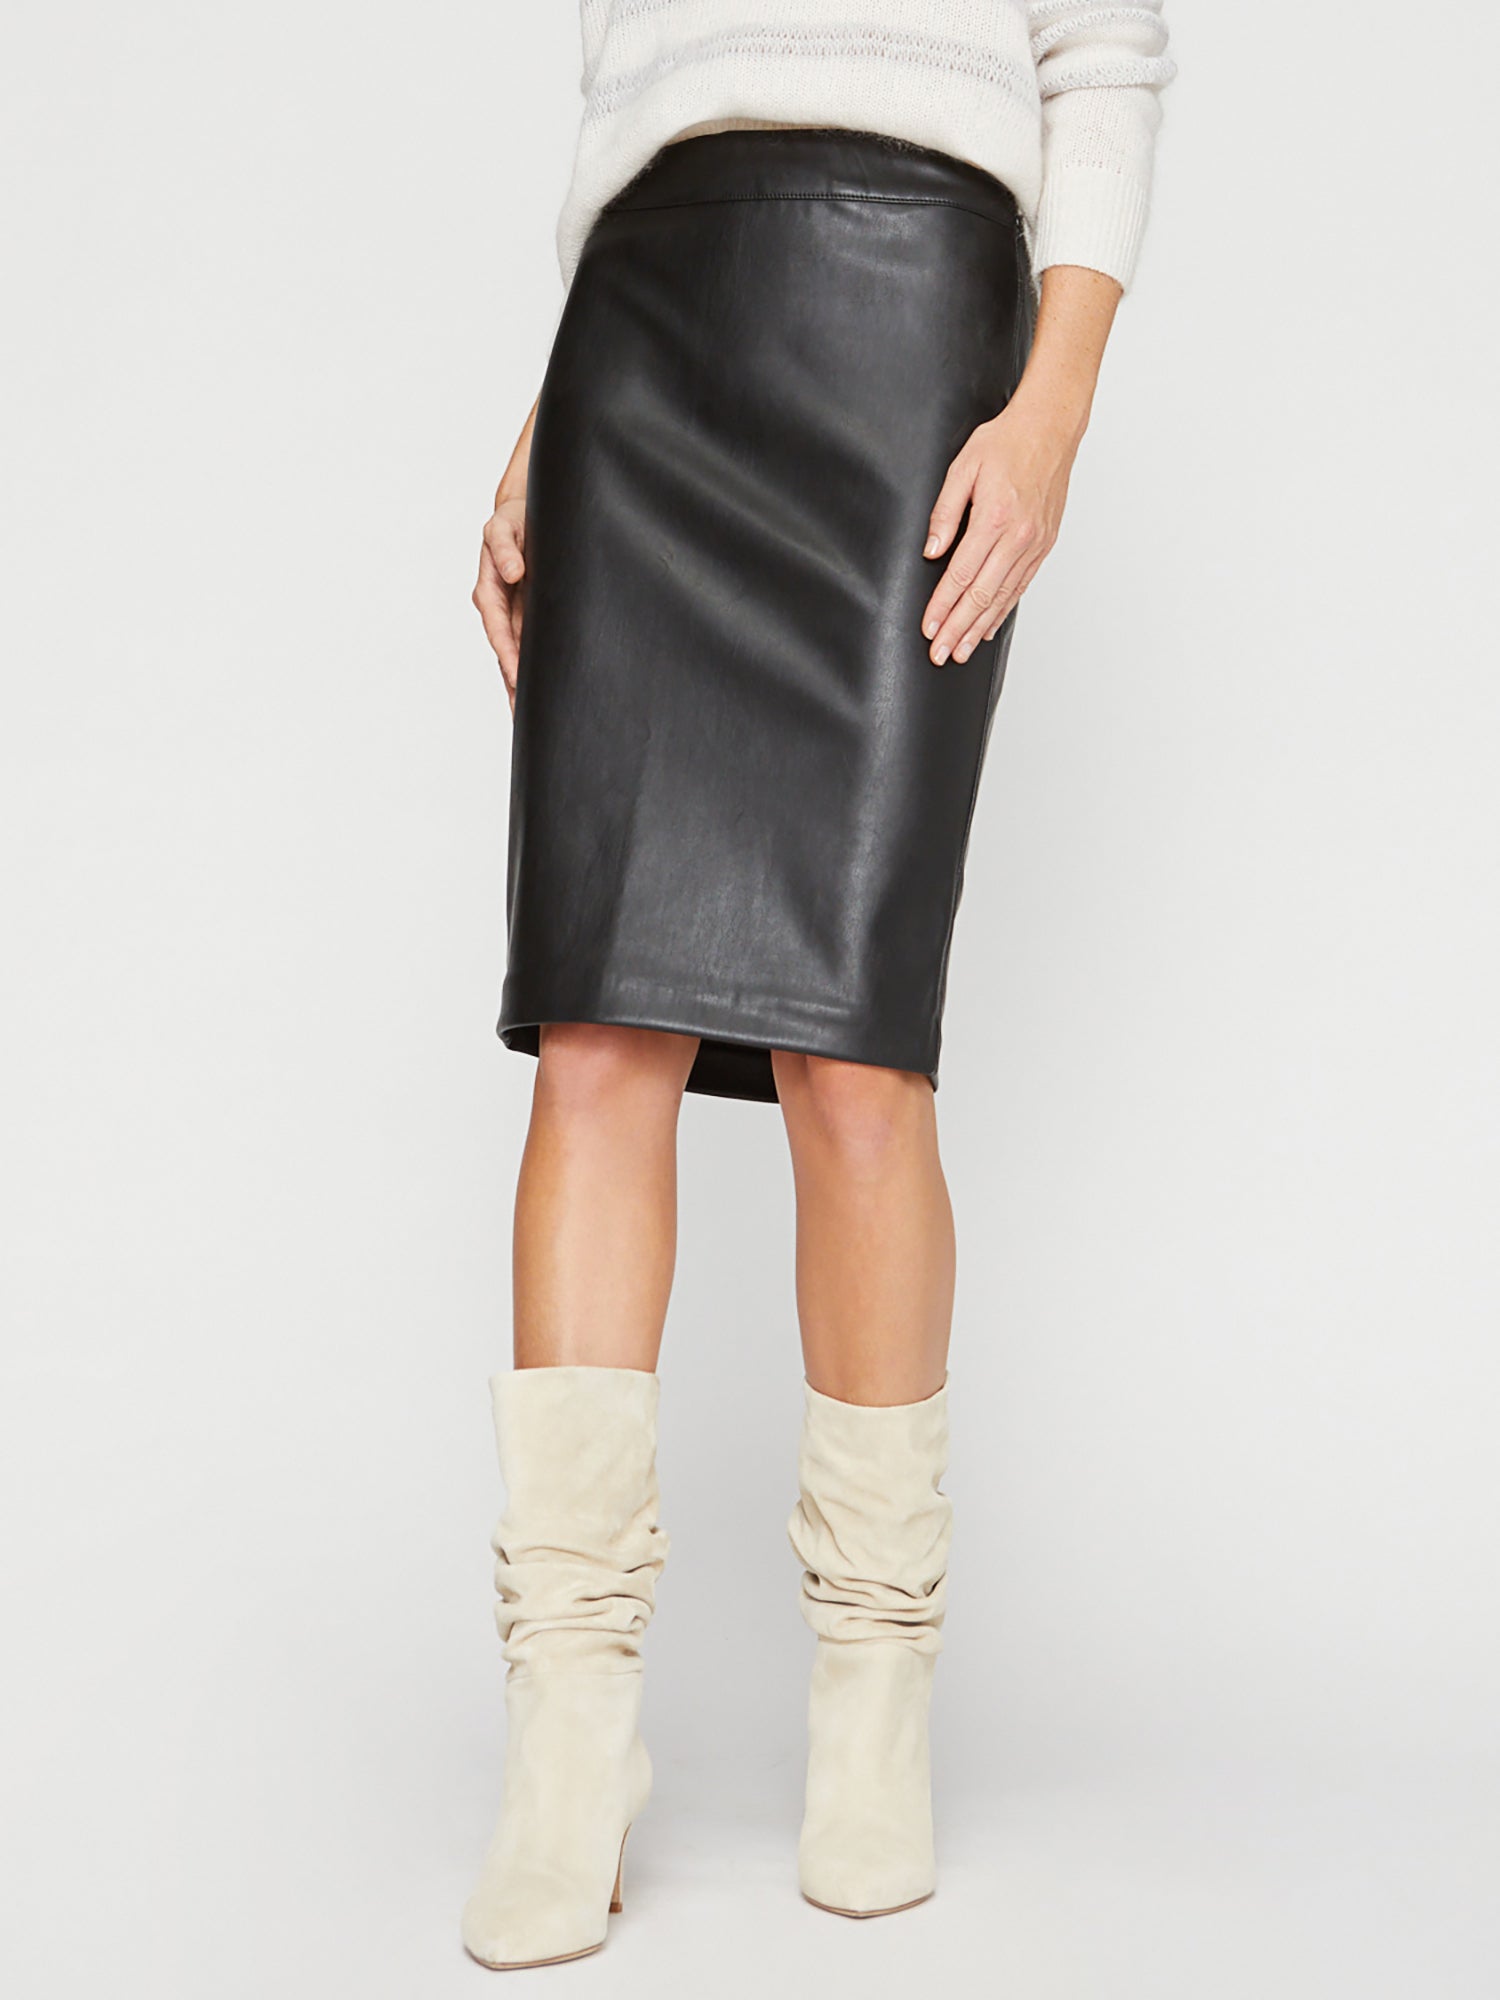 Women's Drew Vegan Leather Skirt in Black Onyx